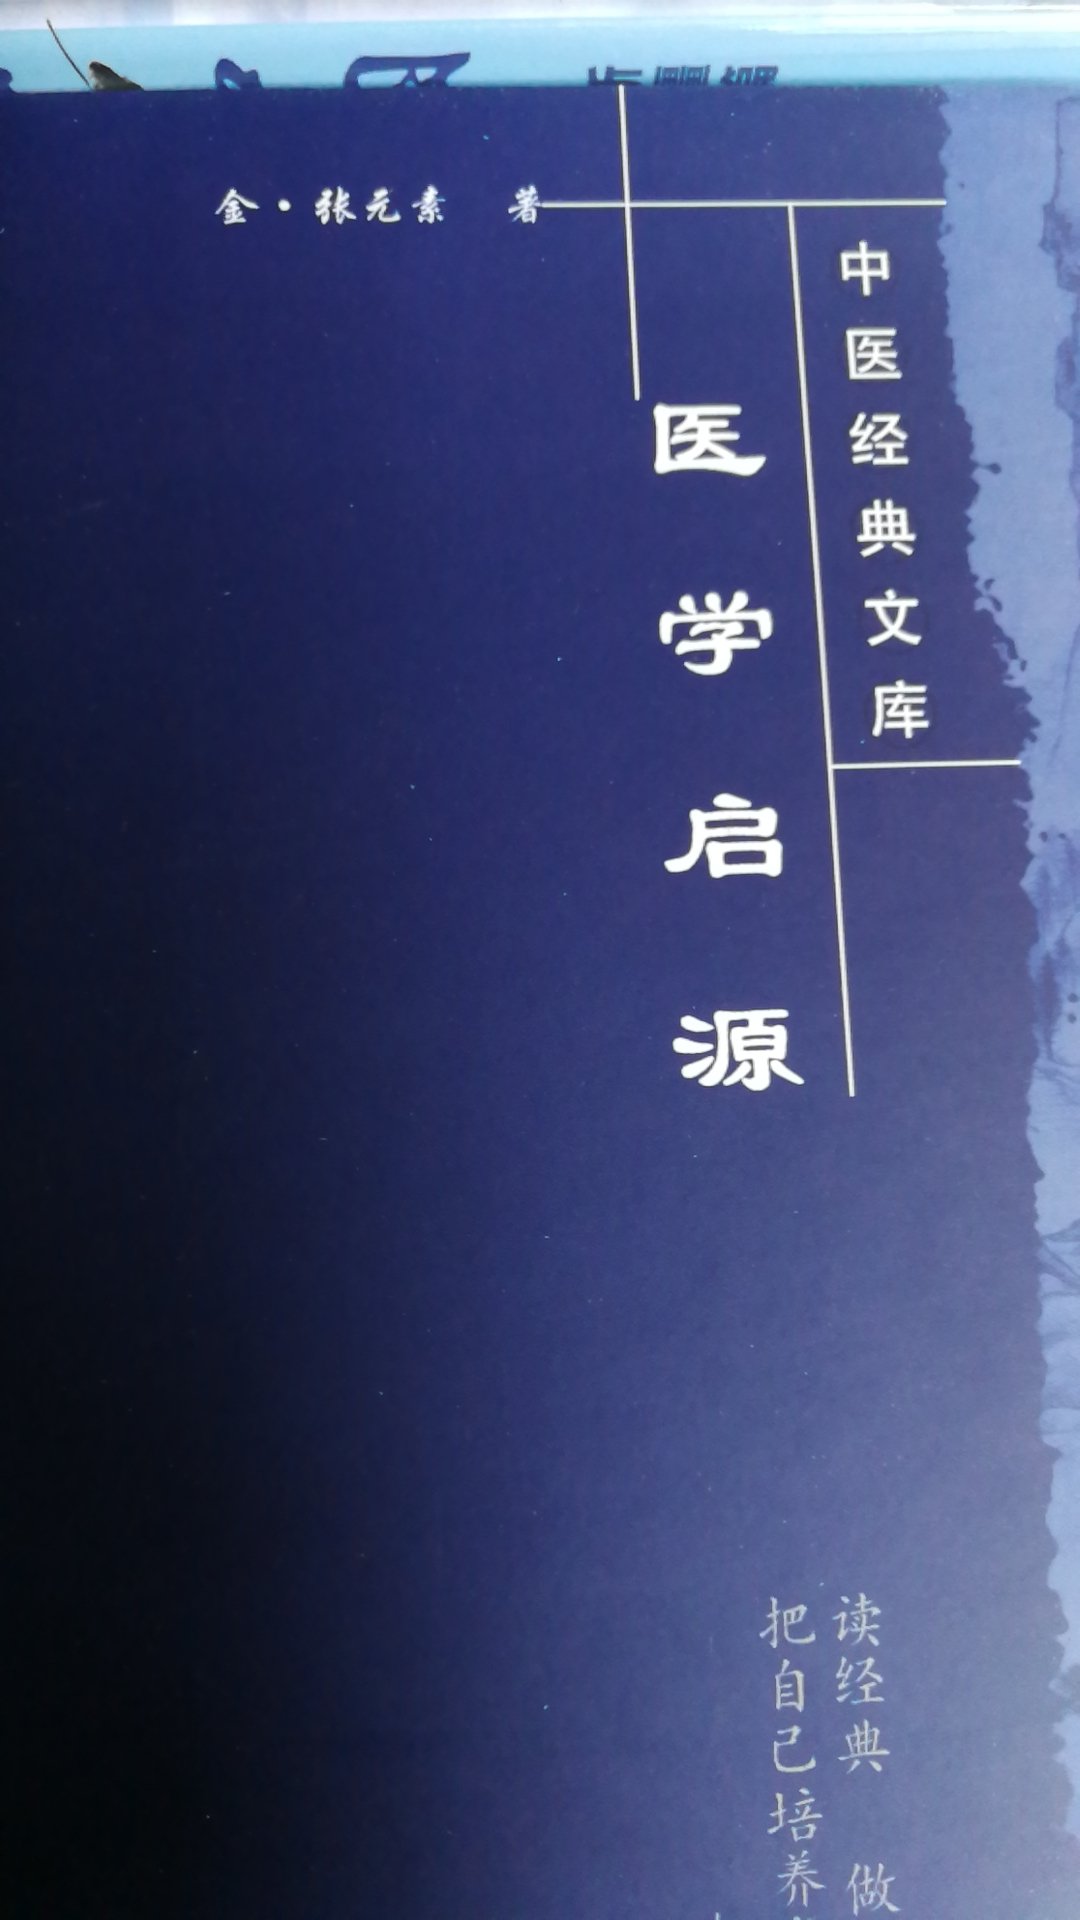 中医典籍，值得称赞和阅读与欣赏。